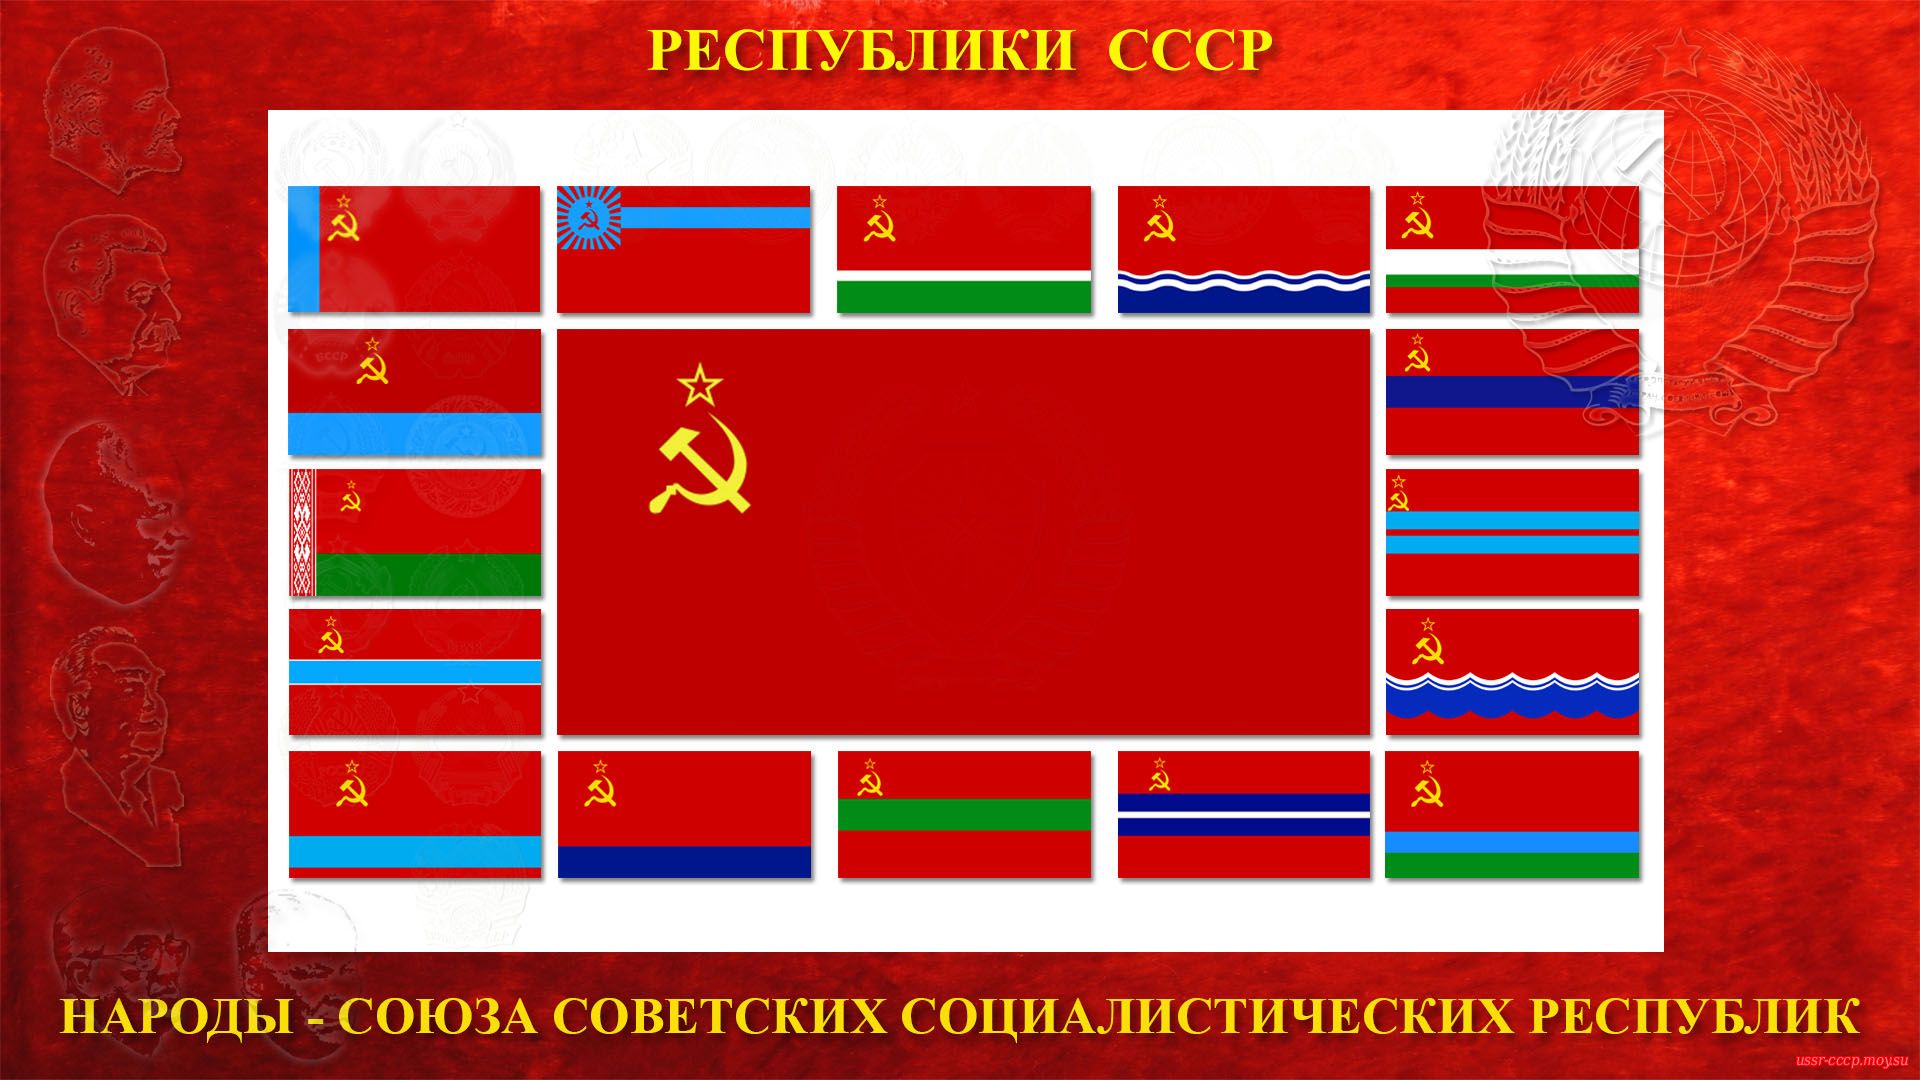 Народы Союза Советских Социалистических Республик